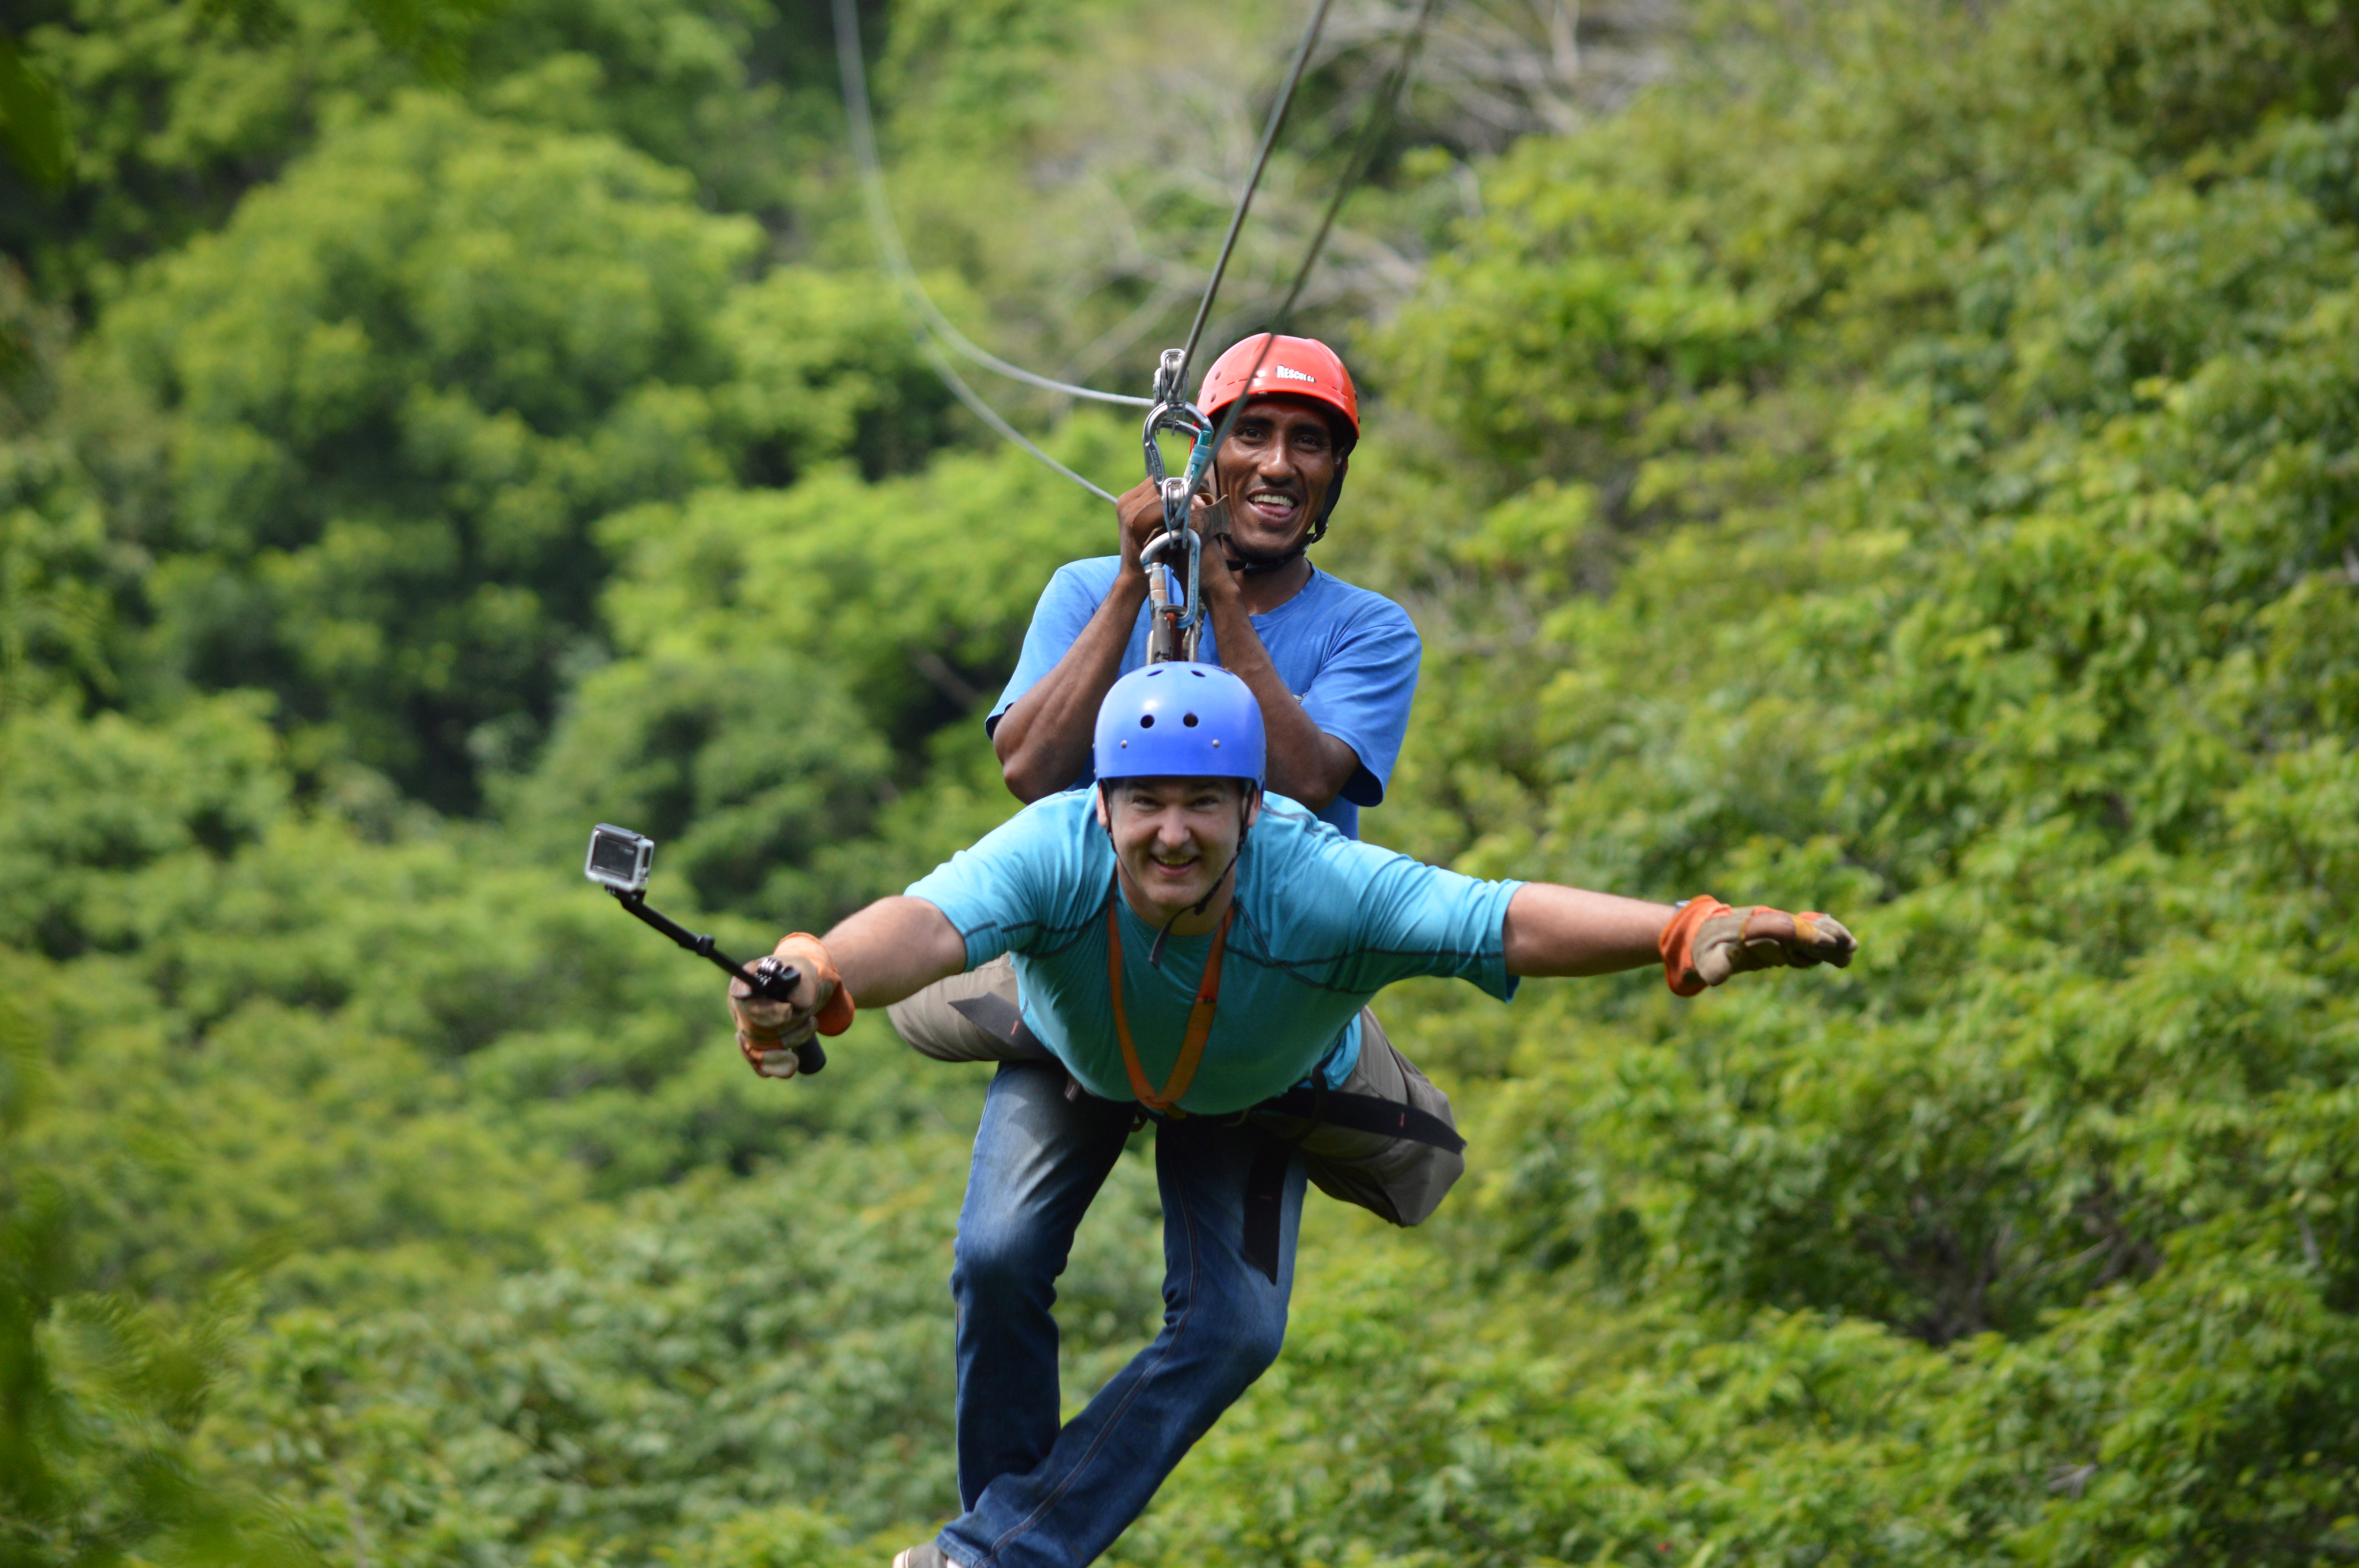 Canopy Adventure Costa Rica & Arrive At Costa Ricau0027s ...